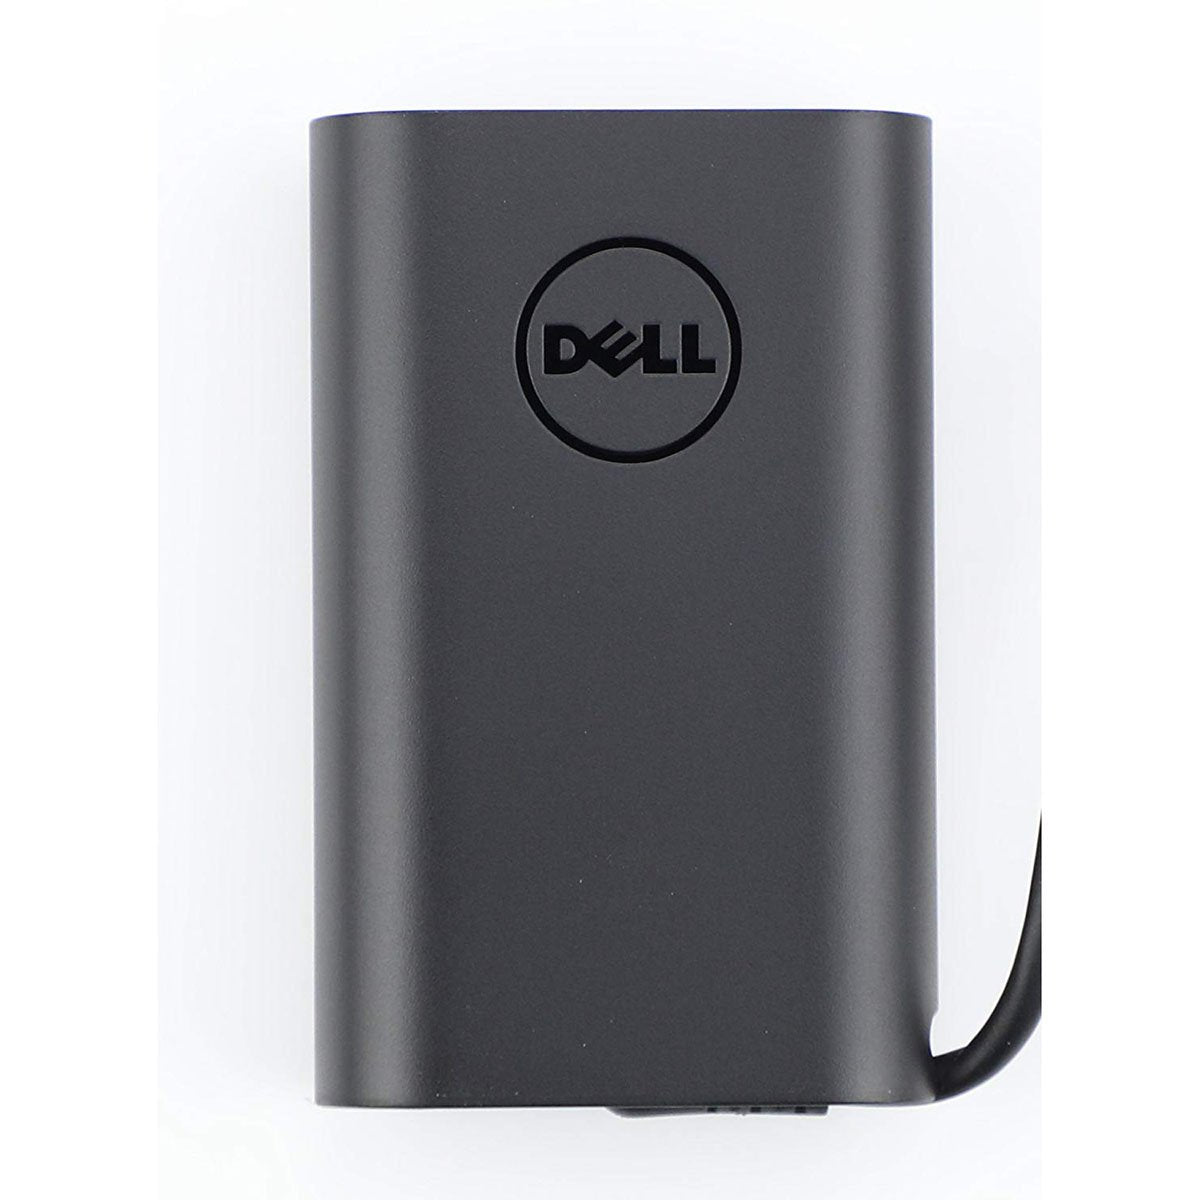 पावर कॉर्ड के साथ अक्षांश 5289 के लिए Dell ओरिजिनल 45W 20V USB टाइप C लैपटॉप चार्जर अडैप्टर